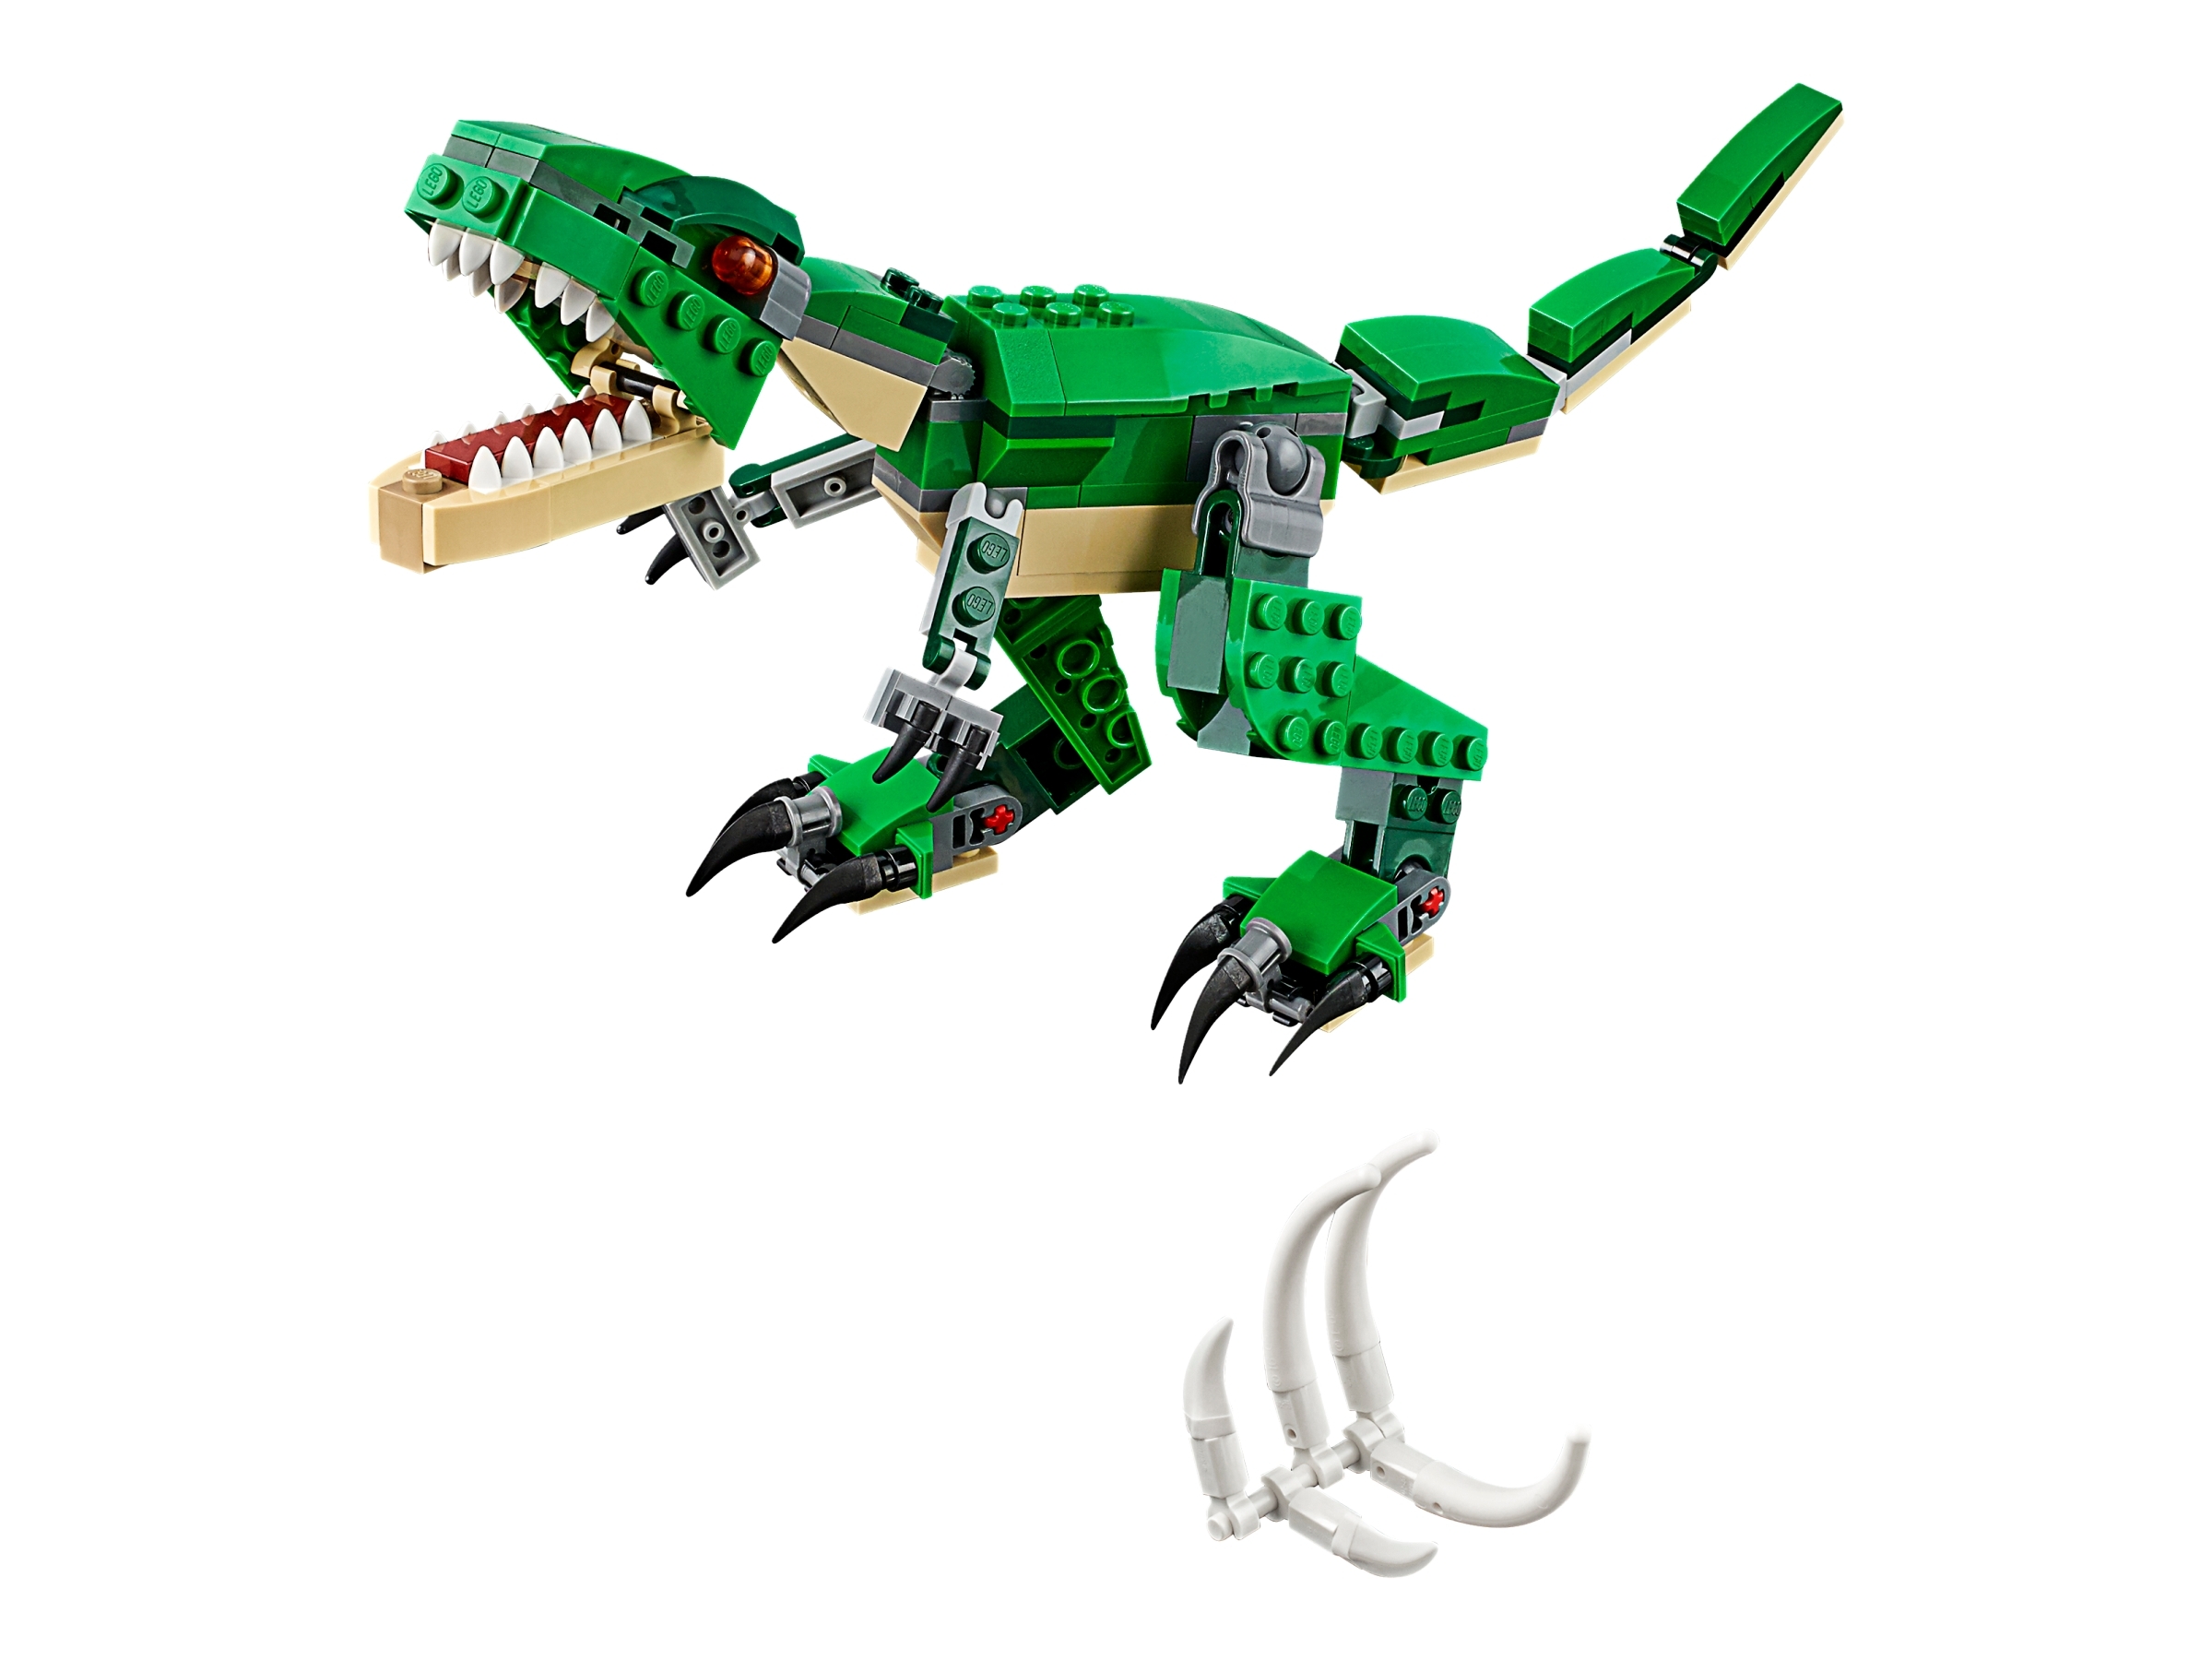 Lego 31058 Creator Mighty dinosaurios de juguete 3 en 1 Modelo Dinosaurio Triceratops y